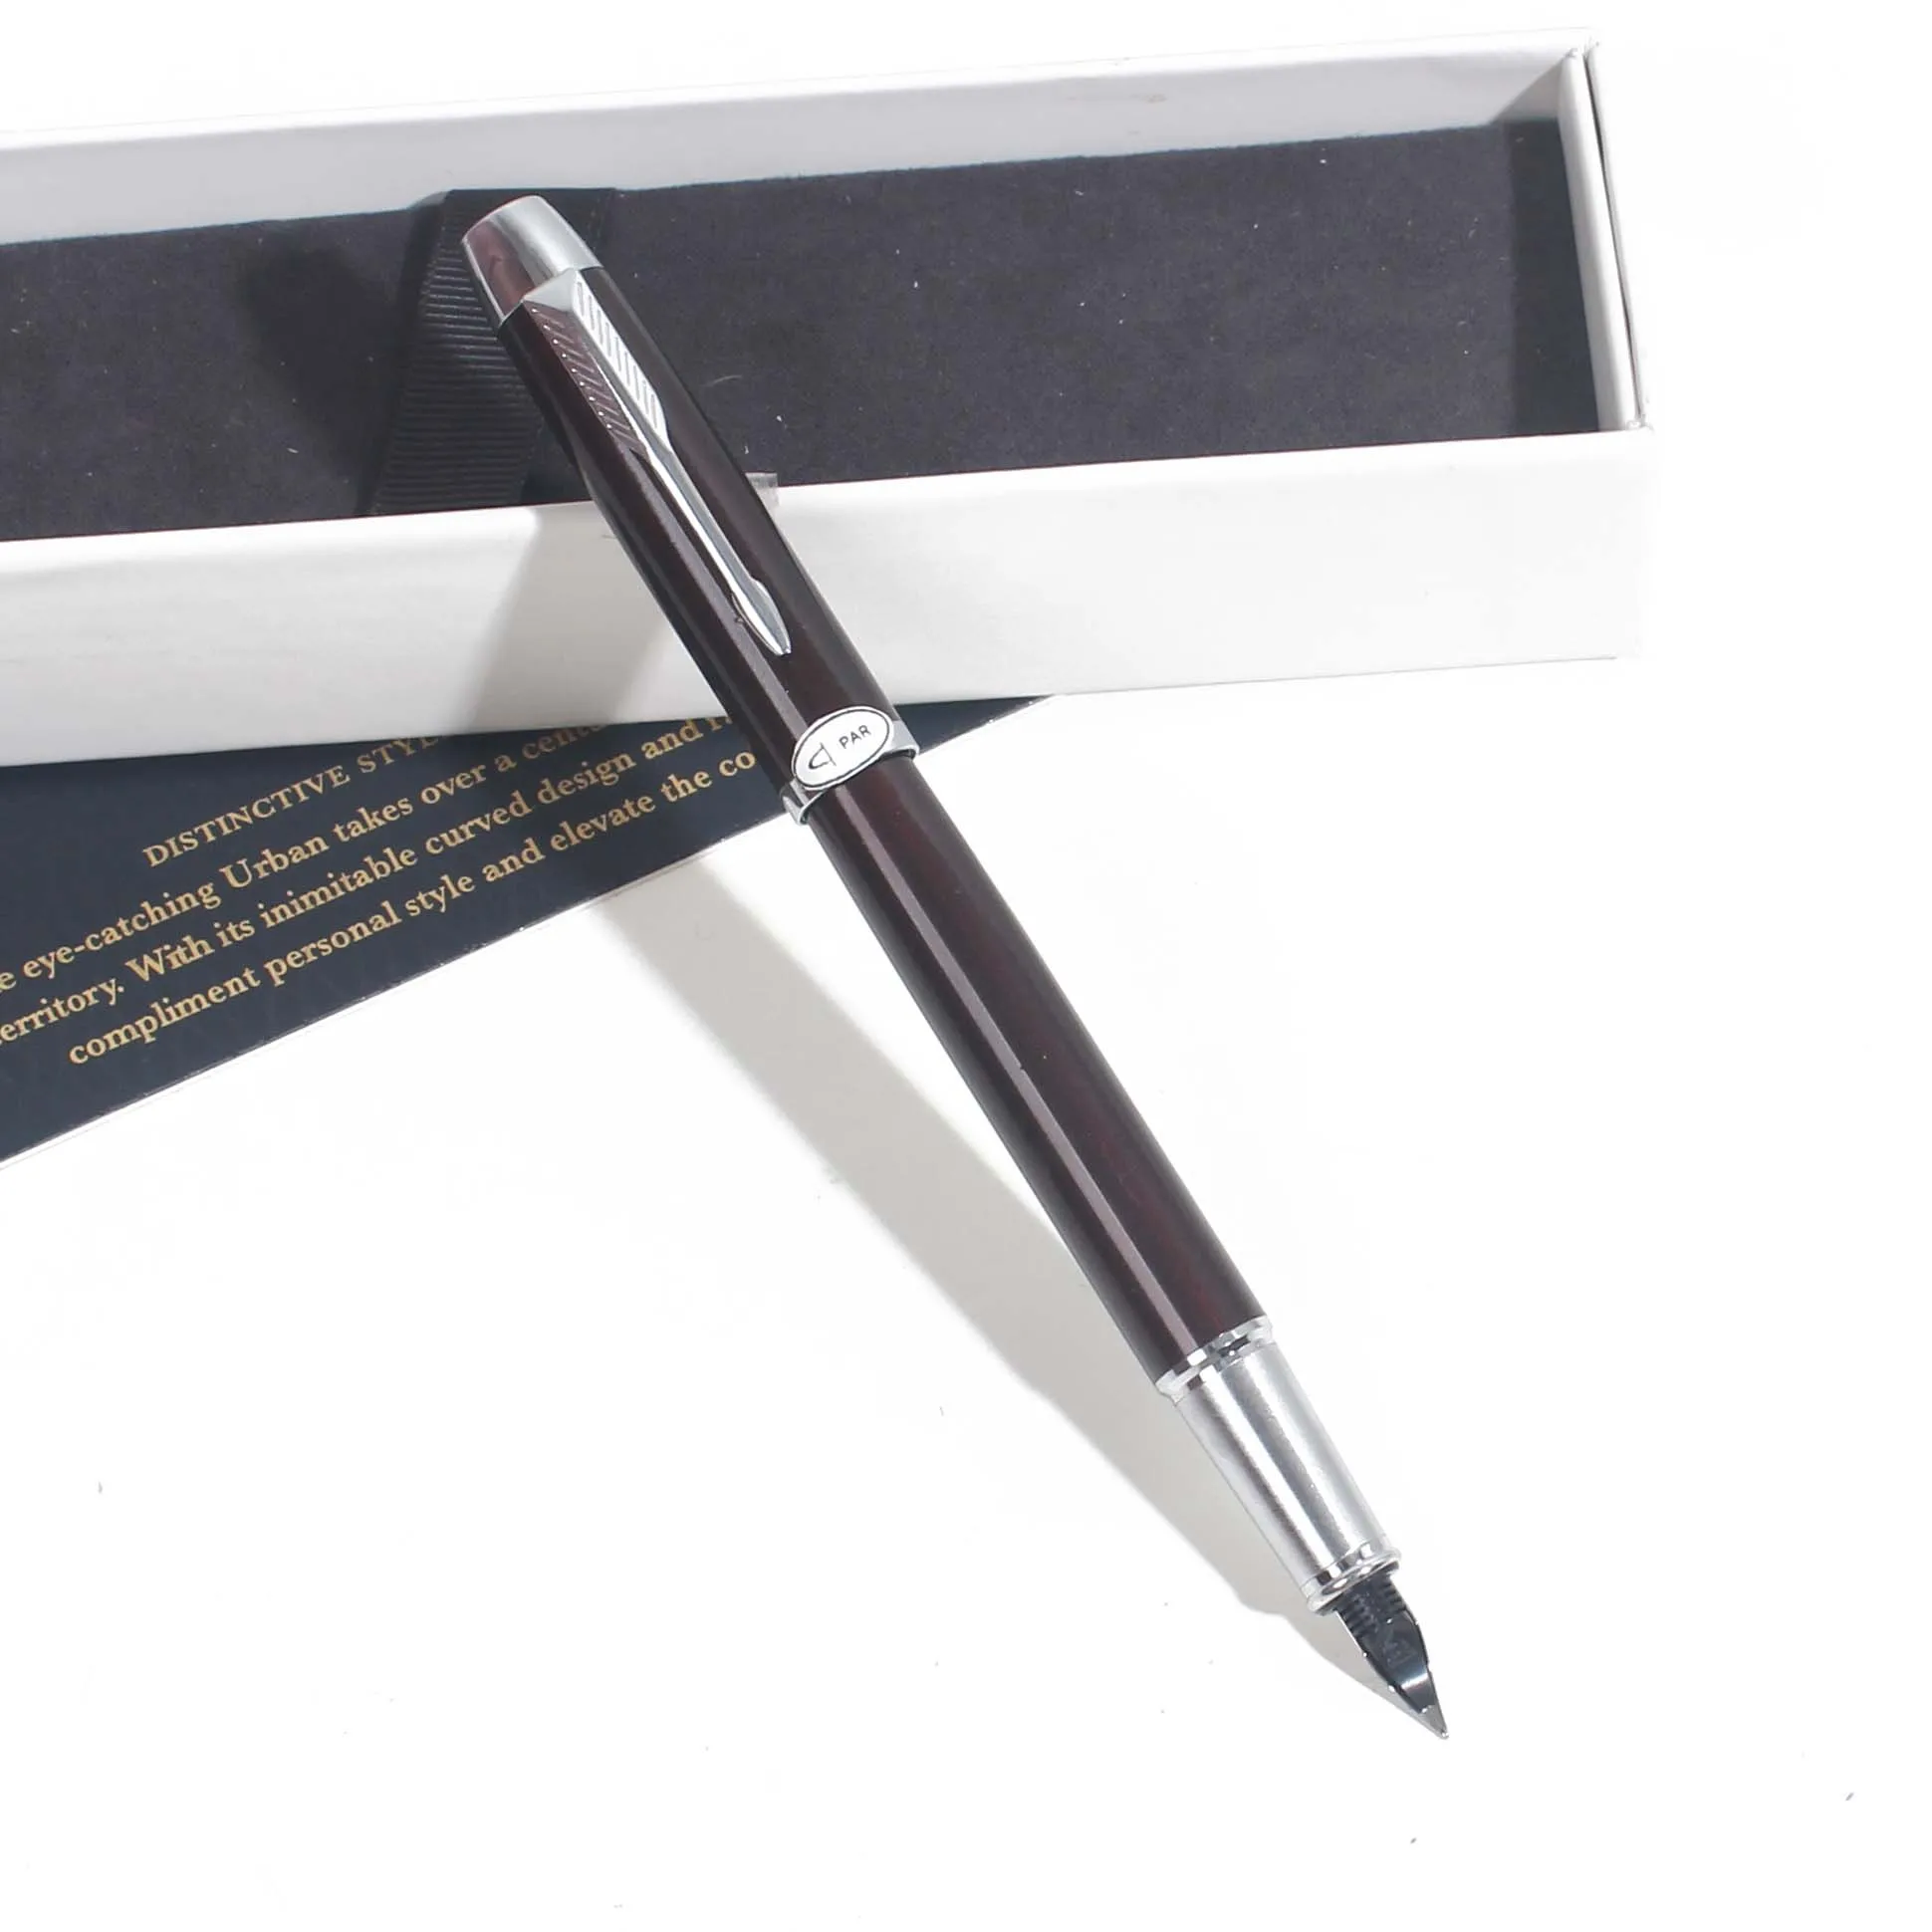 Авторучка IMing авторучка офисная школьная чернильная ручка с подарочной коробкой черная красная серая металлическая авторучка - Цвет: BlackSilverClip